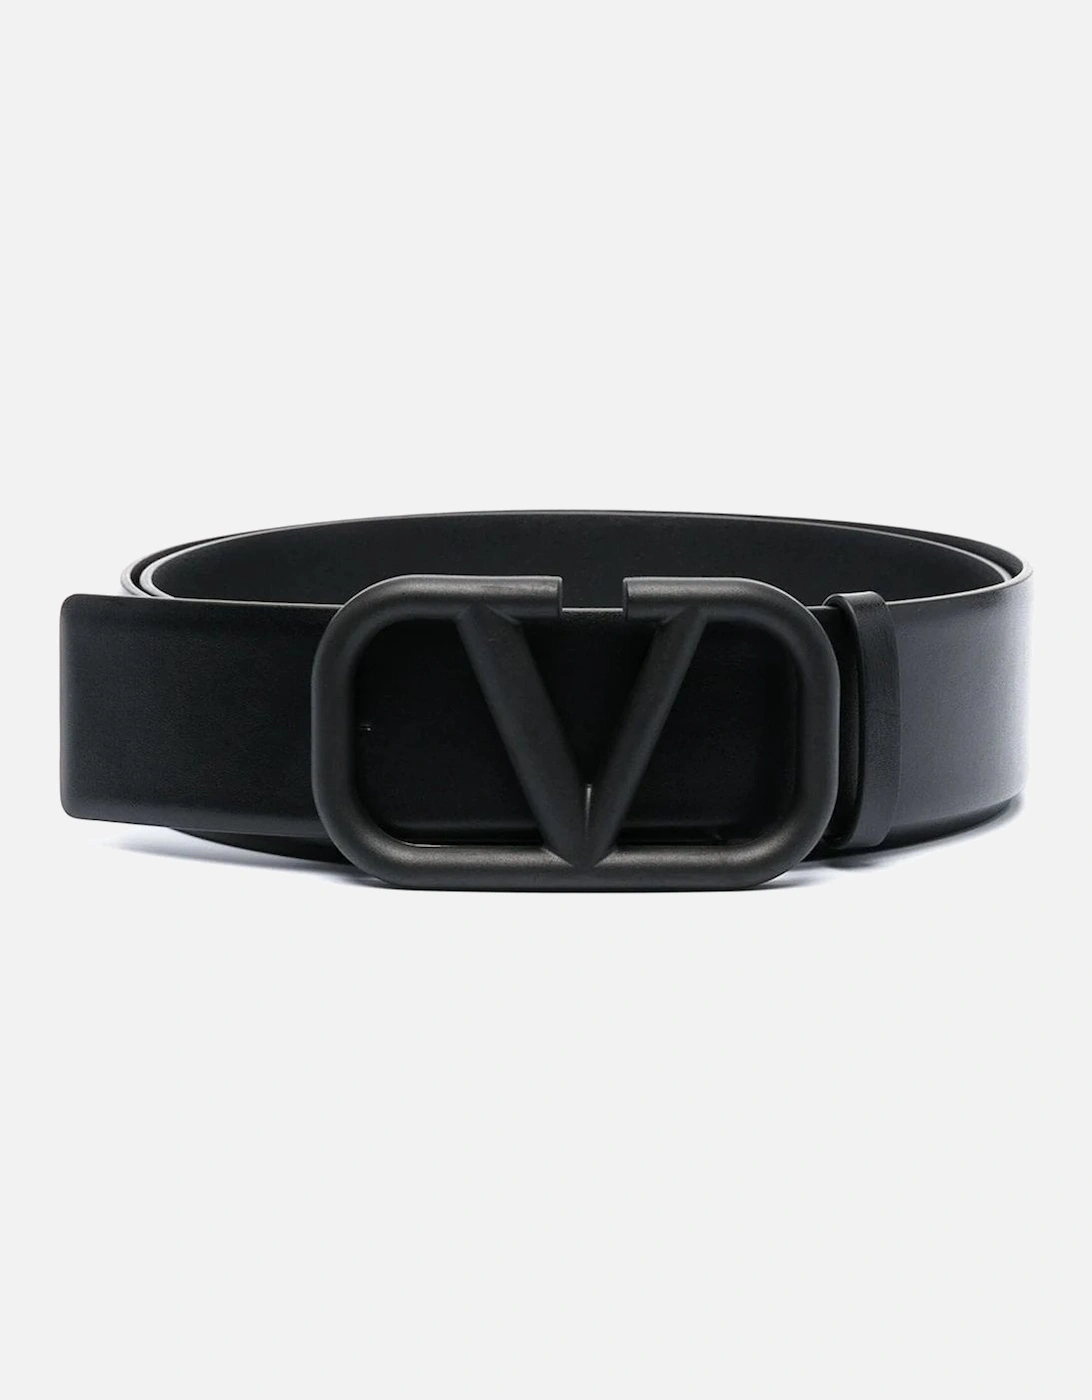 V-Logo leather belt, 3 of 2